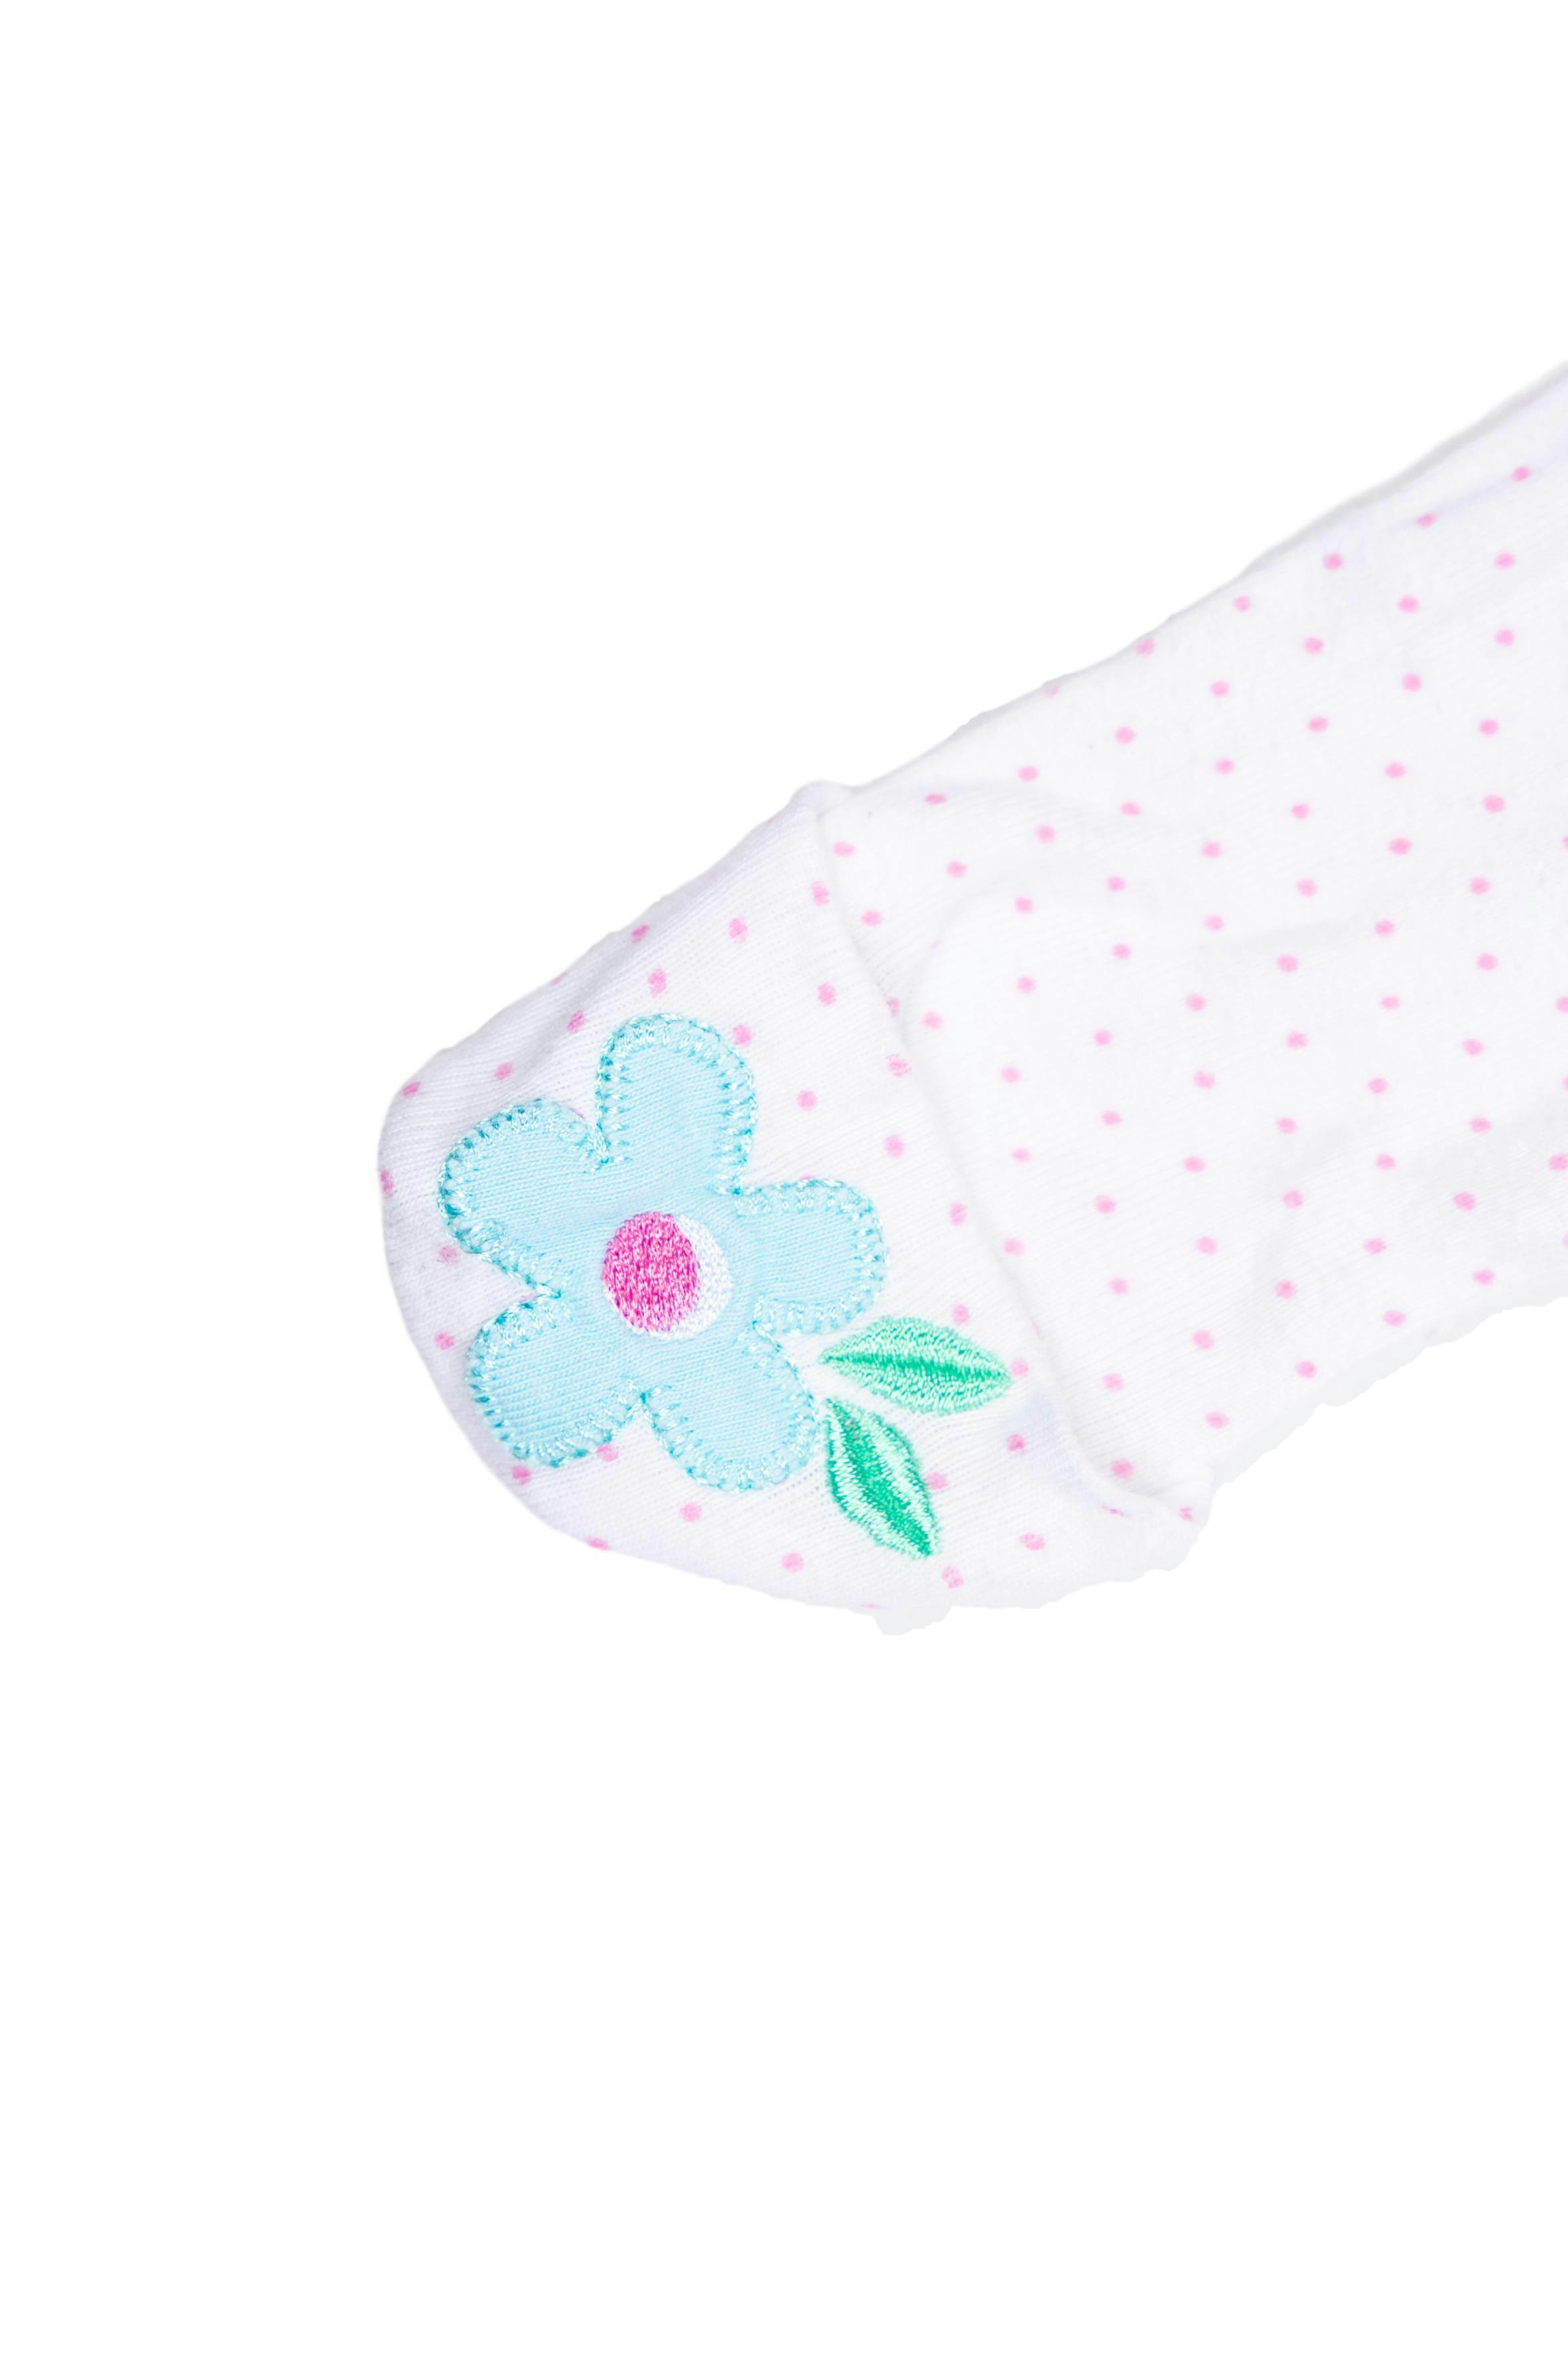 Pijama blanco con manoplas de puntos rosas y flor, 100% algodón - Gerber